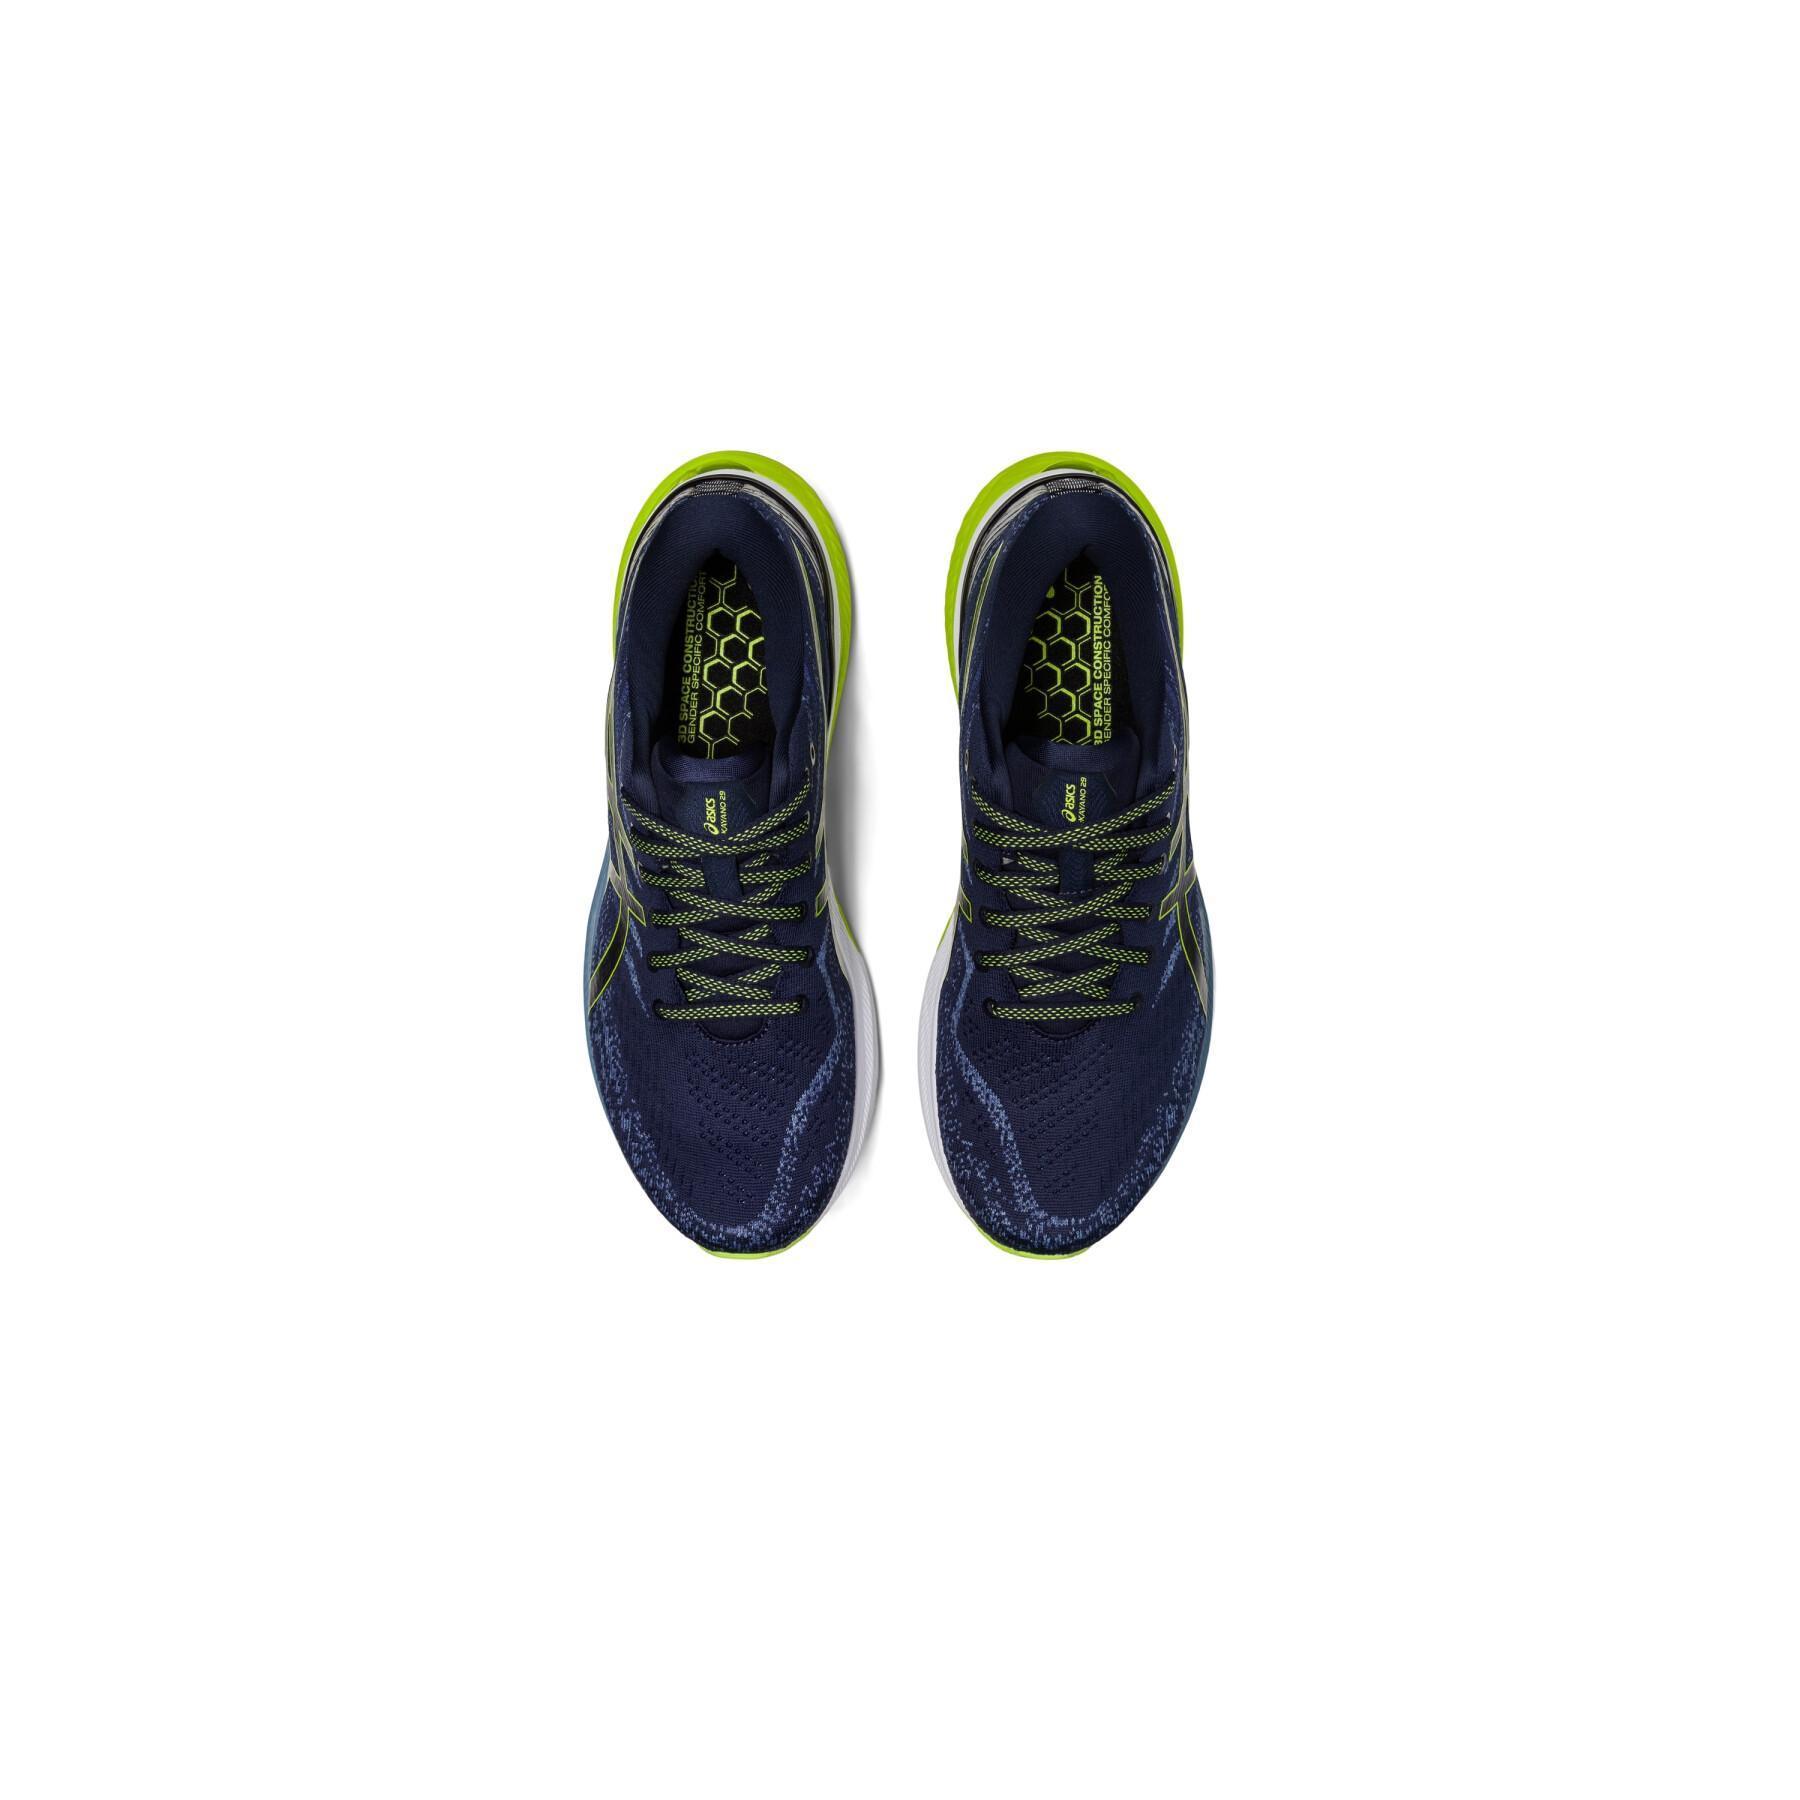 Schuhe von running Asics Gel-Kayano 29